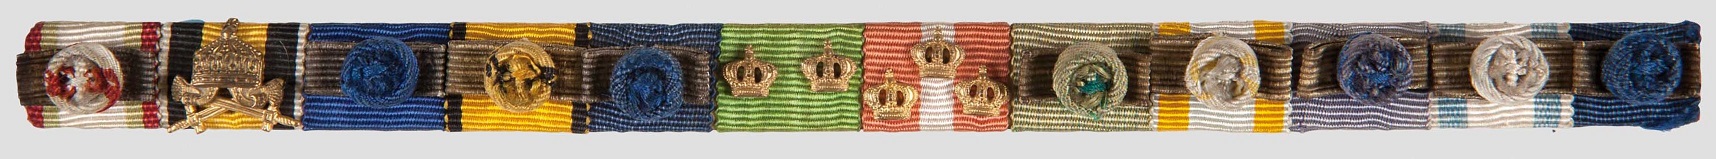 Sacred Treasure order of General Field Marshal Erhard Milch.jpg